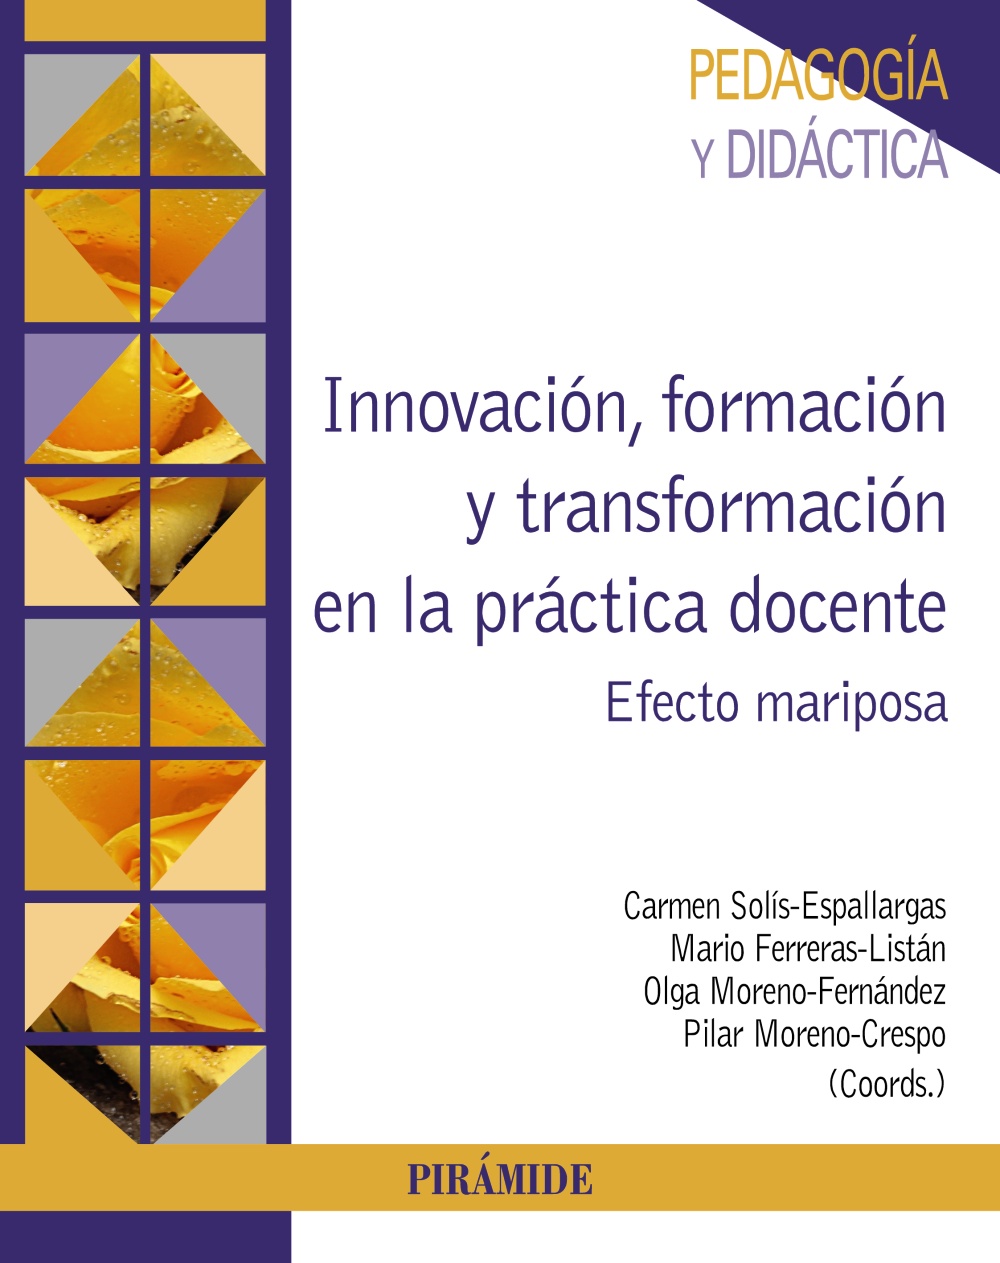 Imagen de portada del libro Innovación, formación y transformación en la práctica docente